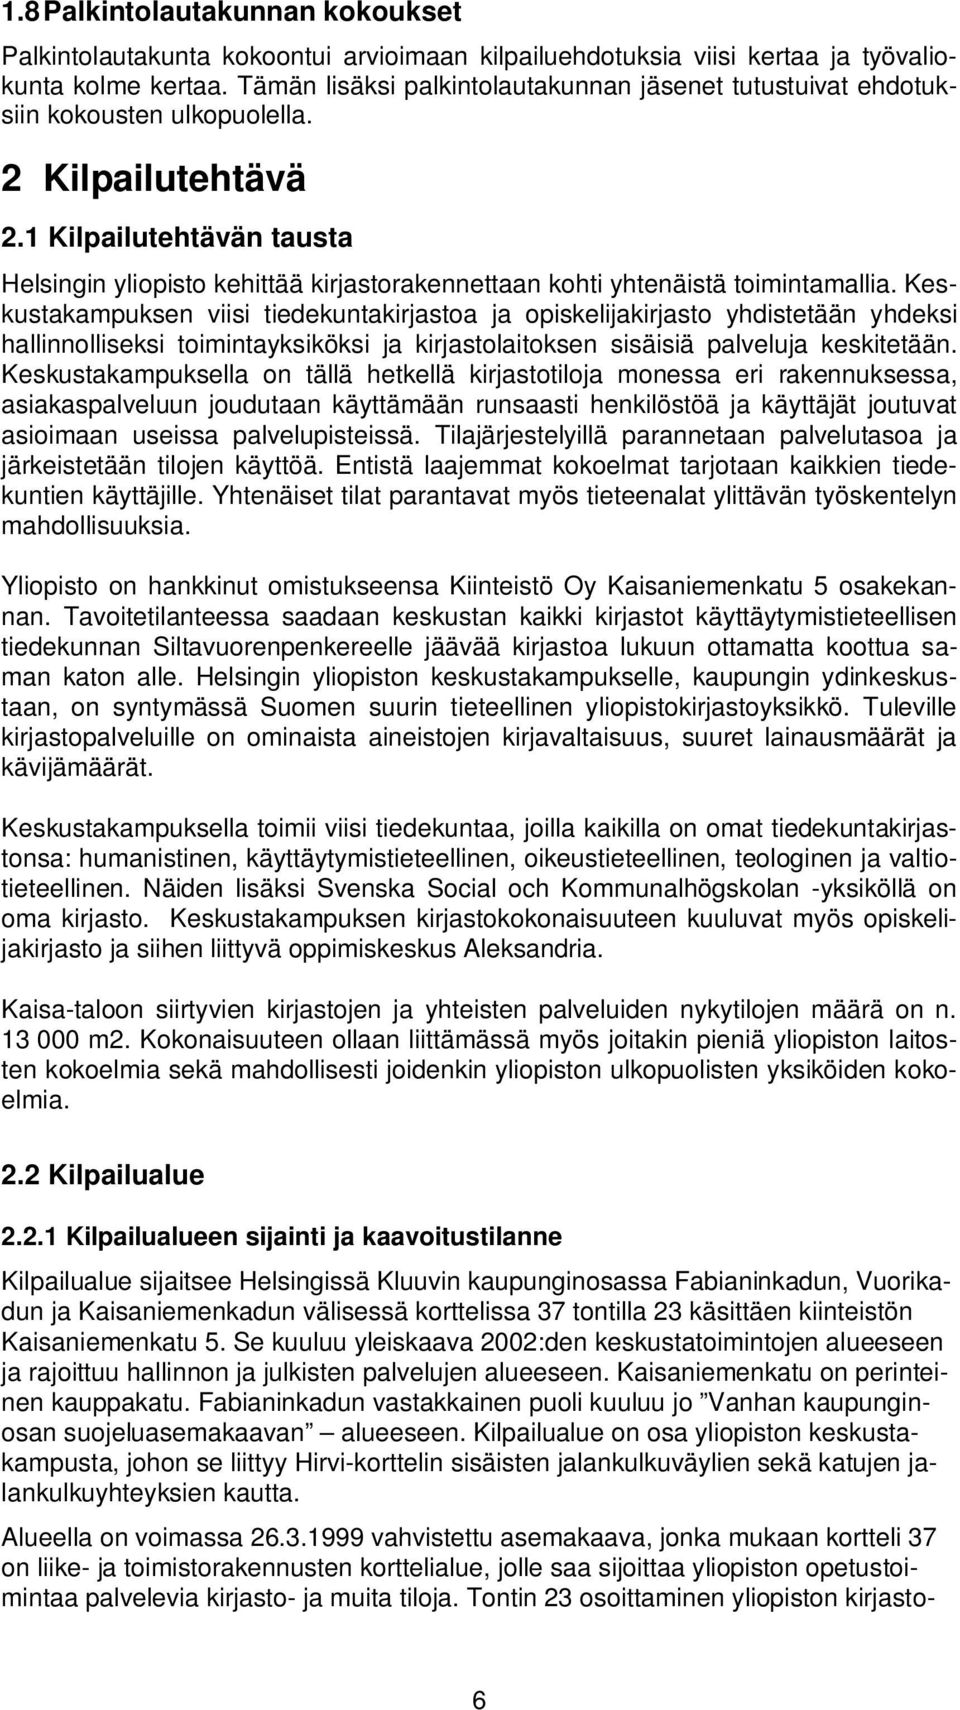 1 Kilpailutehtävän tausta Helsingin yliopisto kehittää kirjastorakennettaan kohti yhtenäistä toimintamallia.